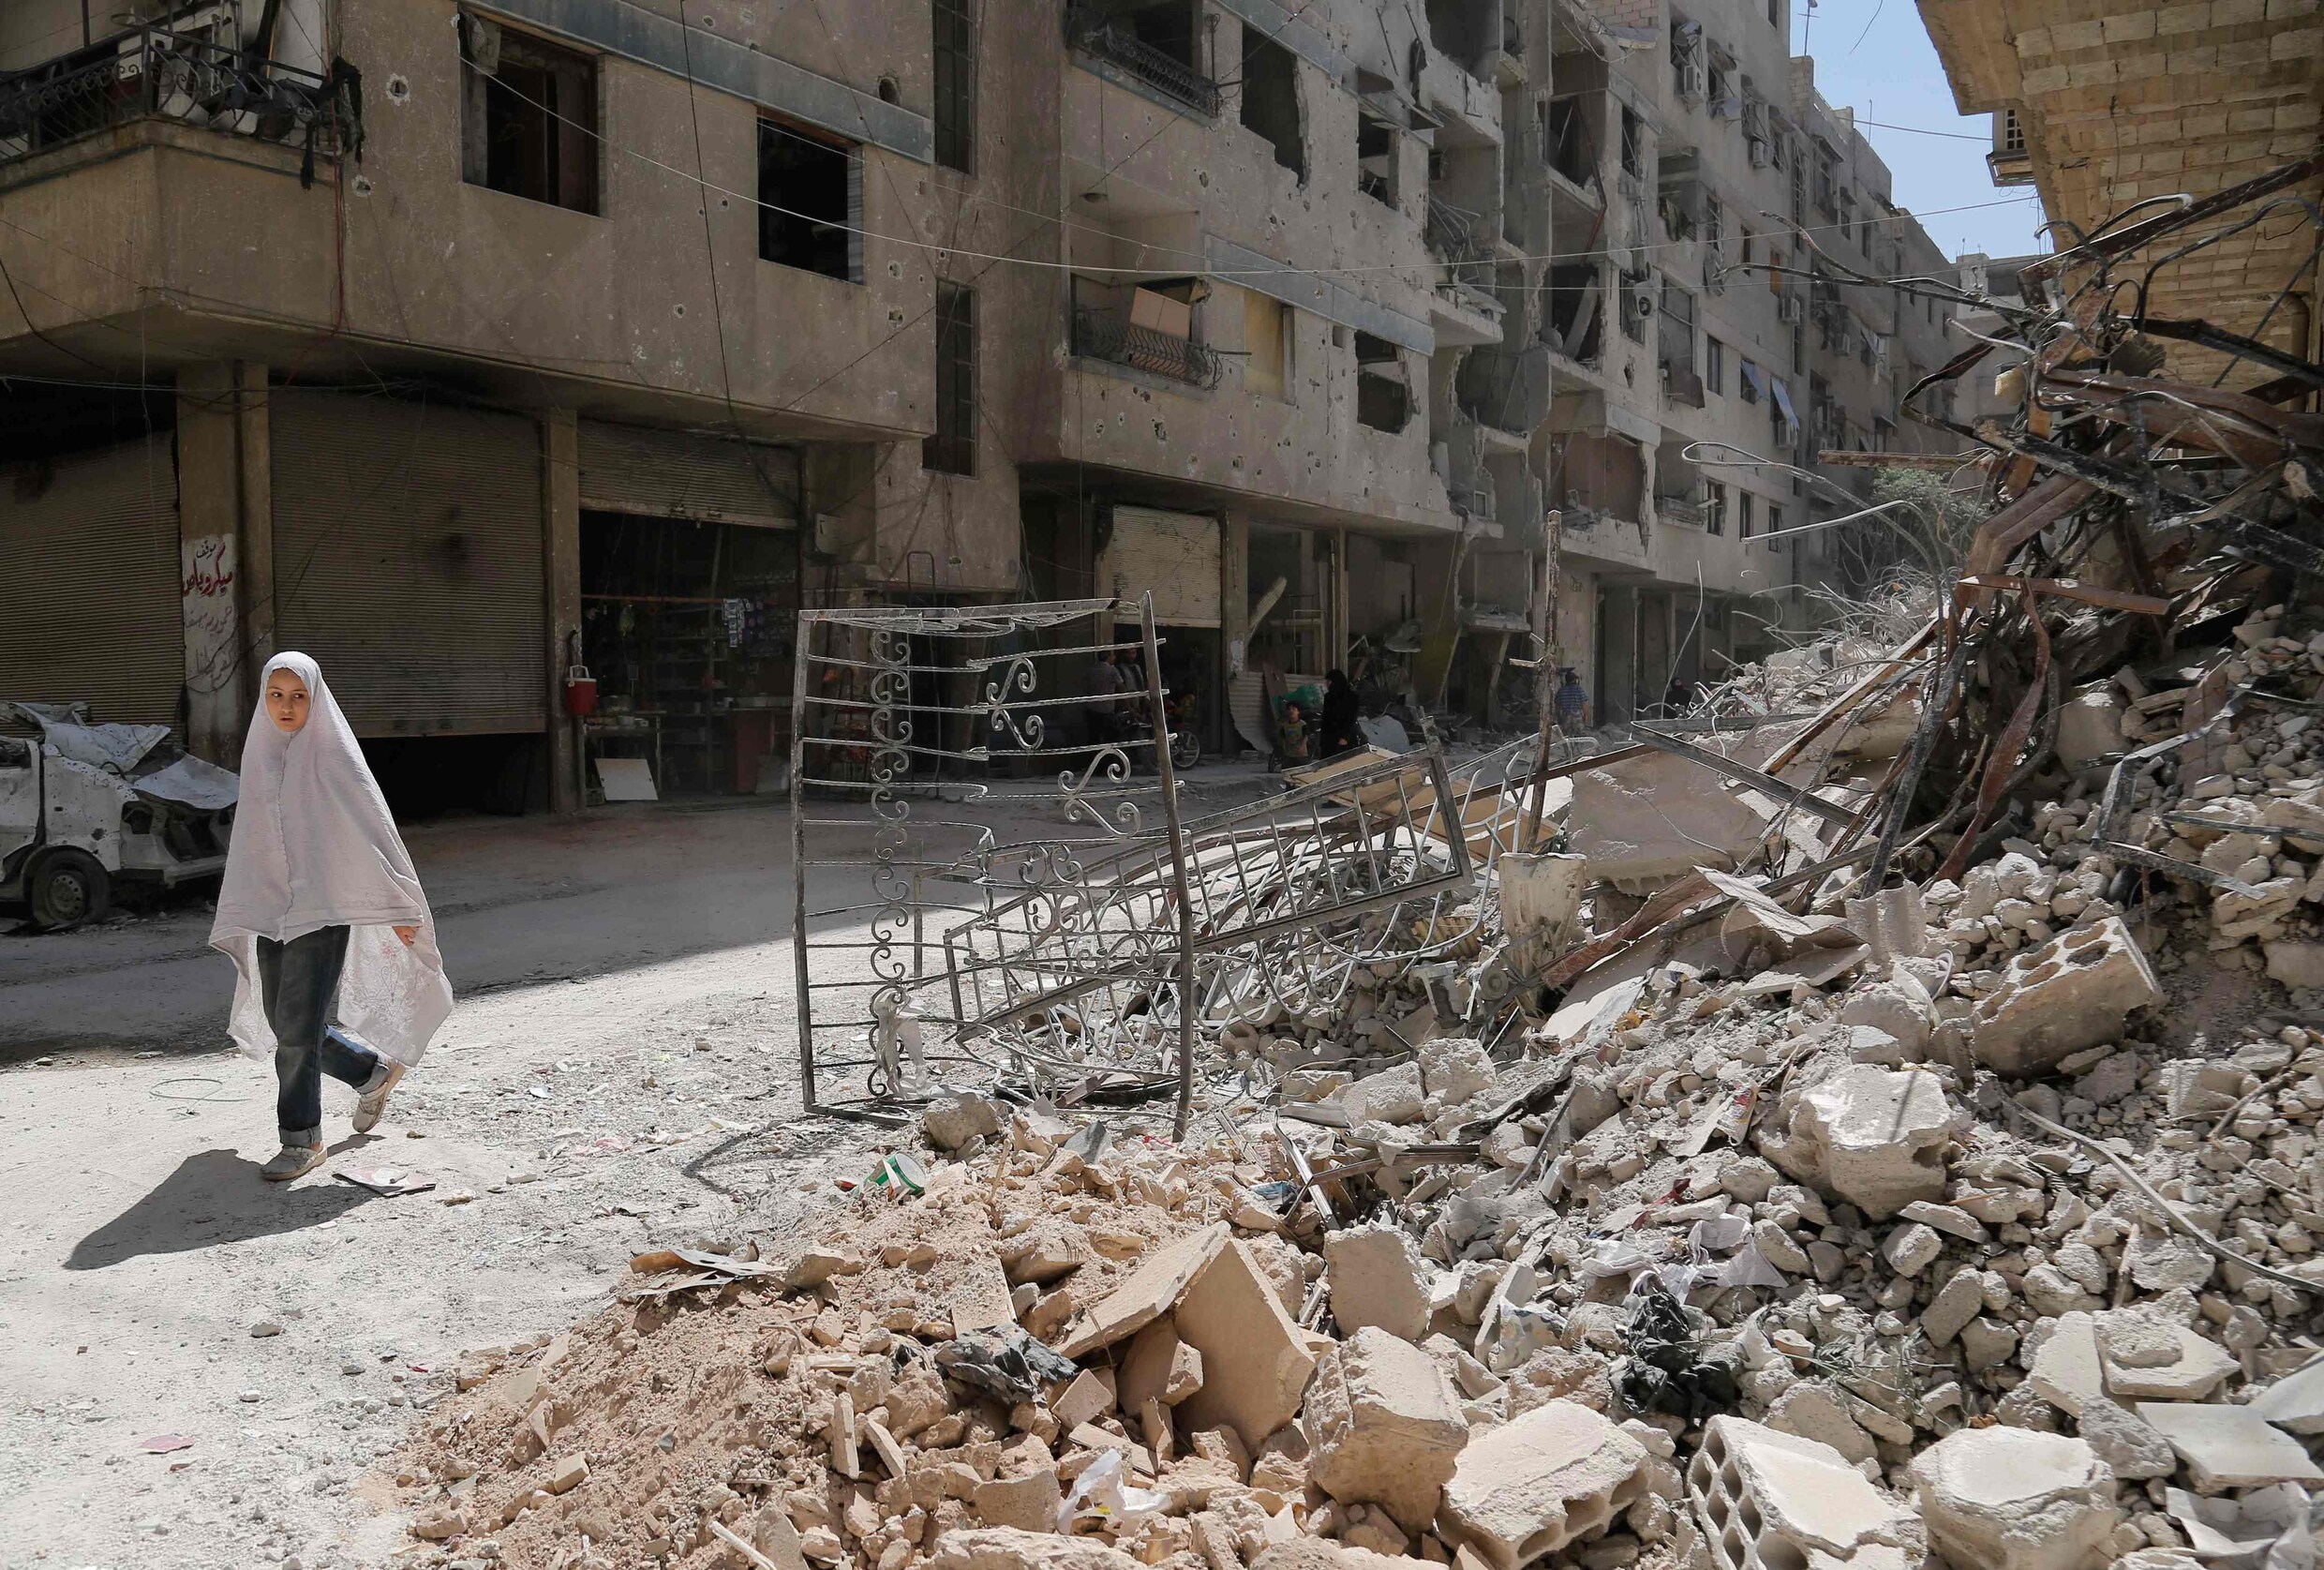 1 dag na staakt-het-vuren bombardeert Syrische leger veilige zone